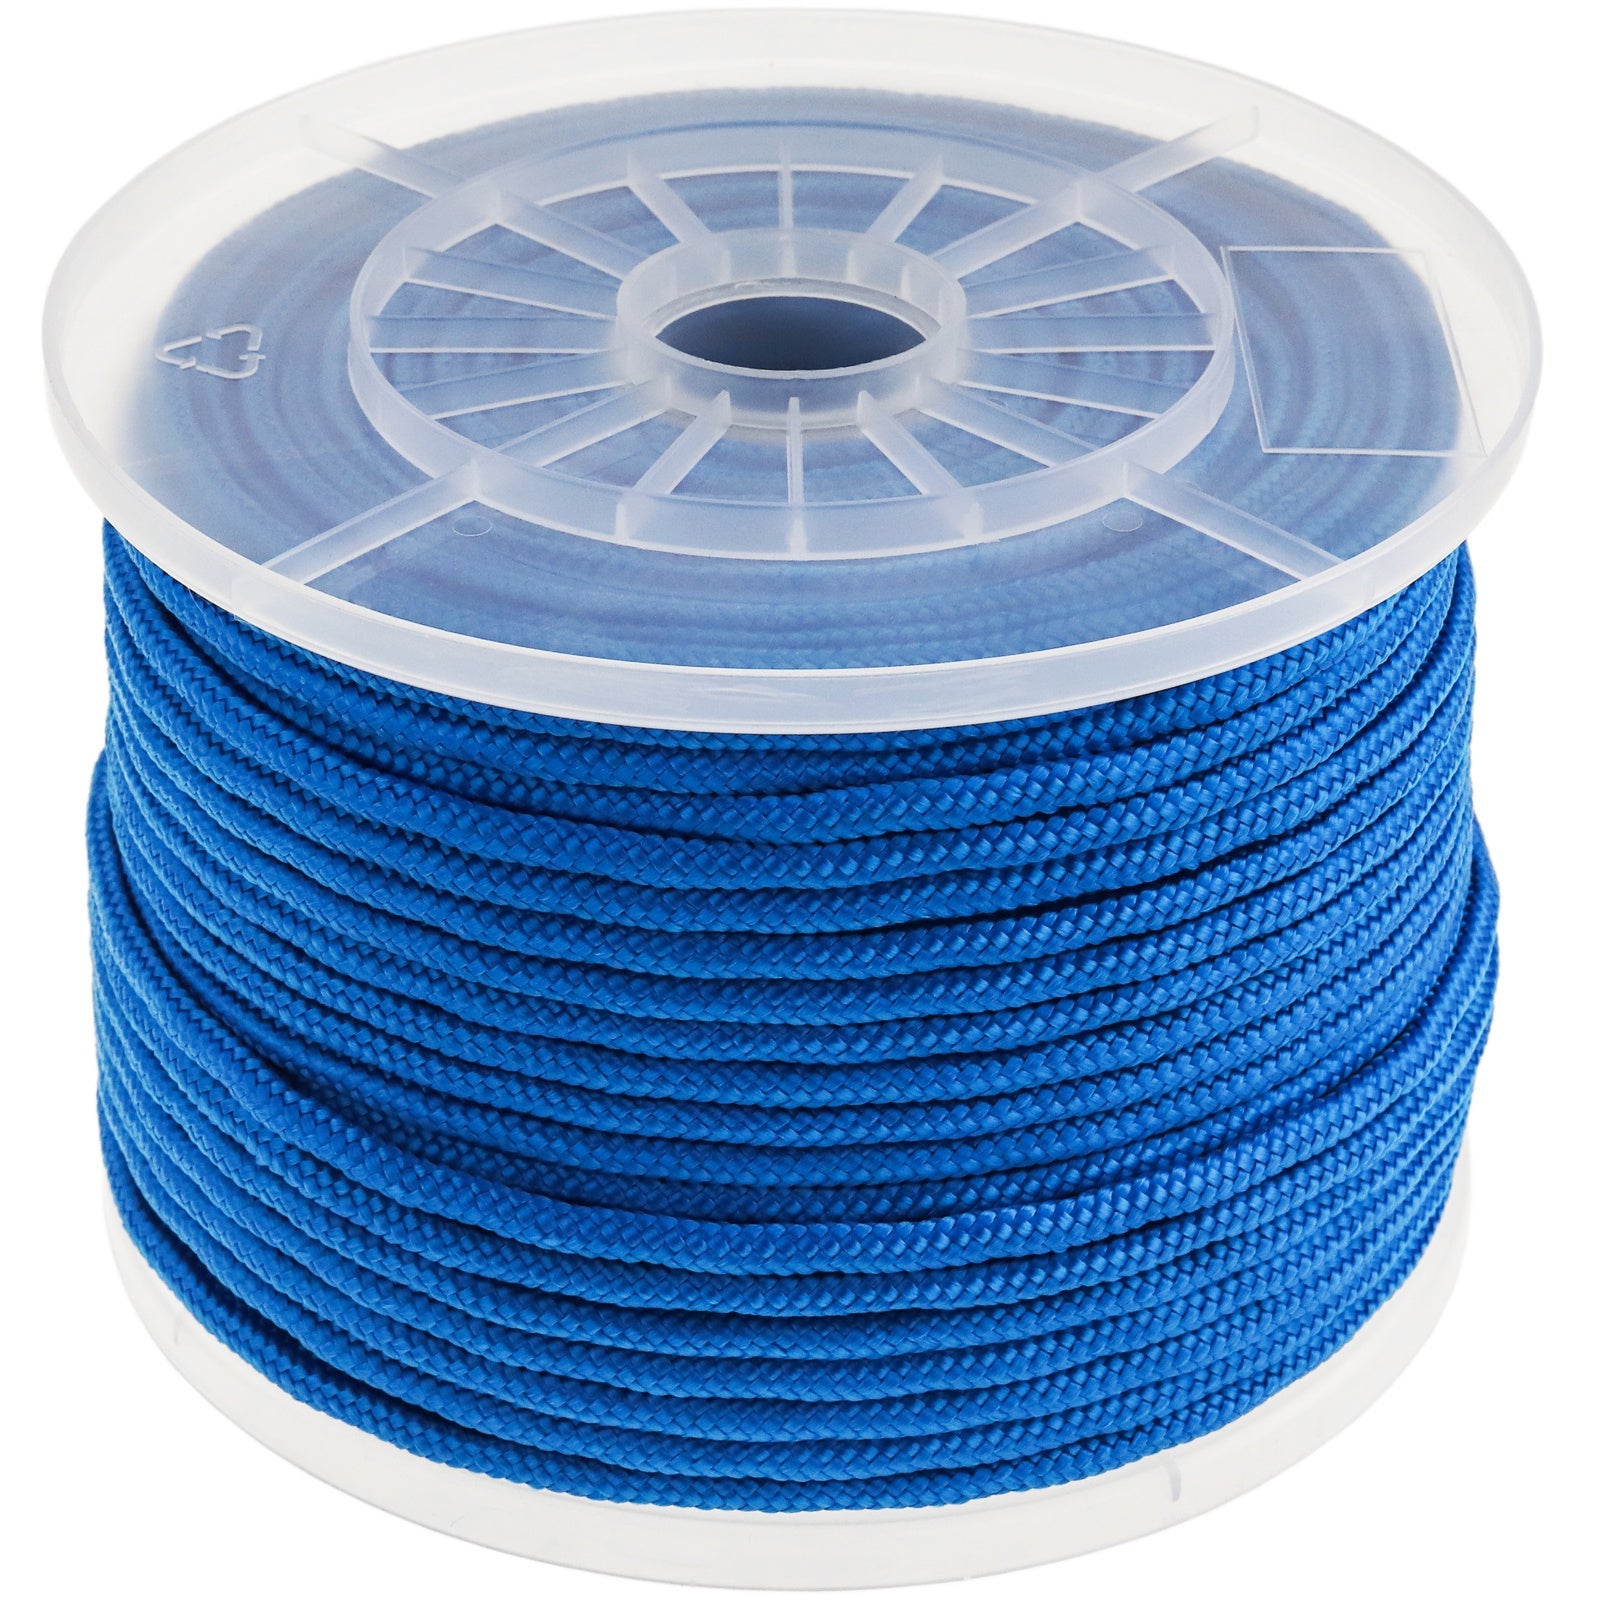 Fil en nylon tressé bleu 0,8 mm pour 100m